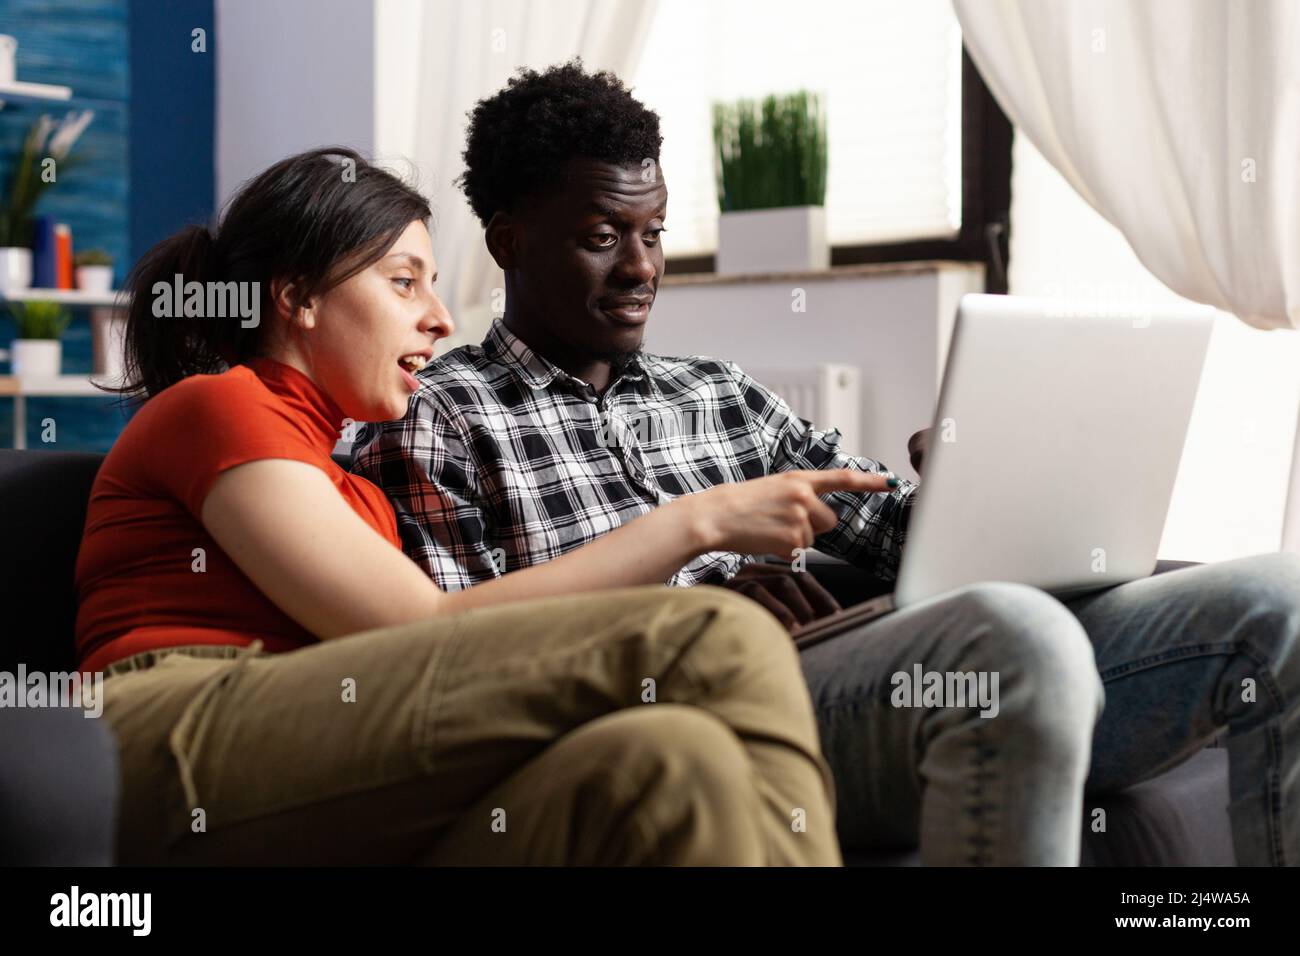 Fröhliches junges multiethnisches Paar, das auf den Computerbildschirm schaut, während es auf der Couch im Wohnzimmer sitzt. Menschen genießen es, beim lässigen Surfen zusammen zu sein und sehen interessante Videos im Internet. Stockfoto